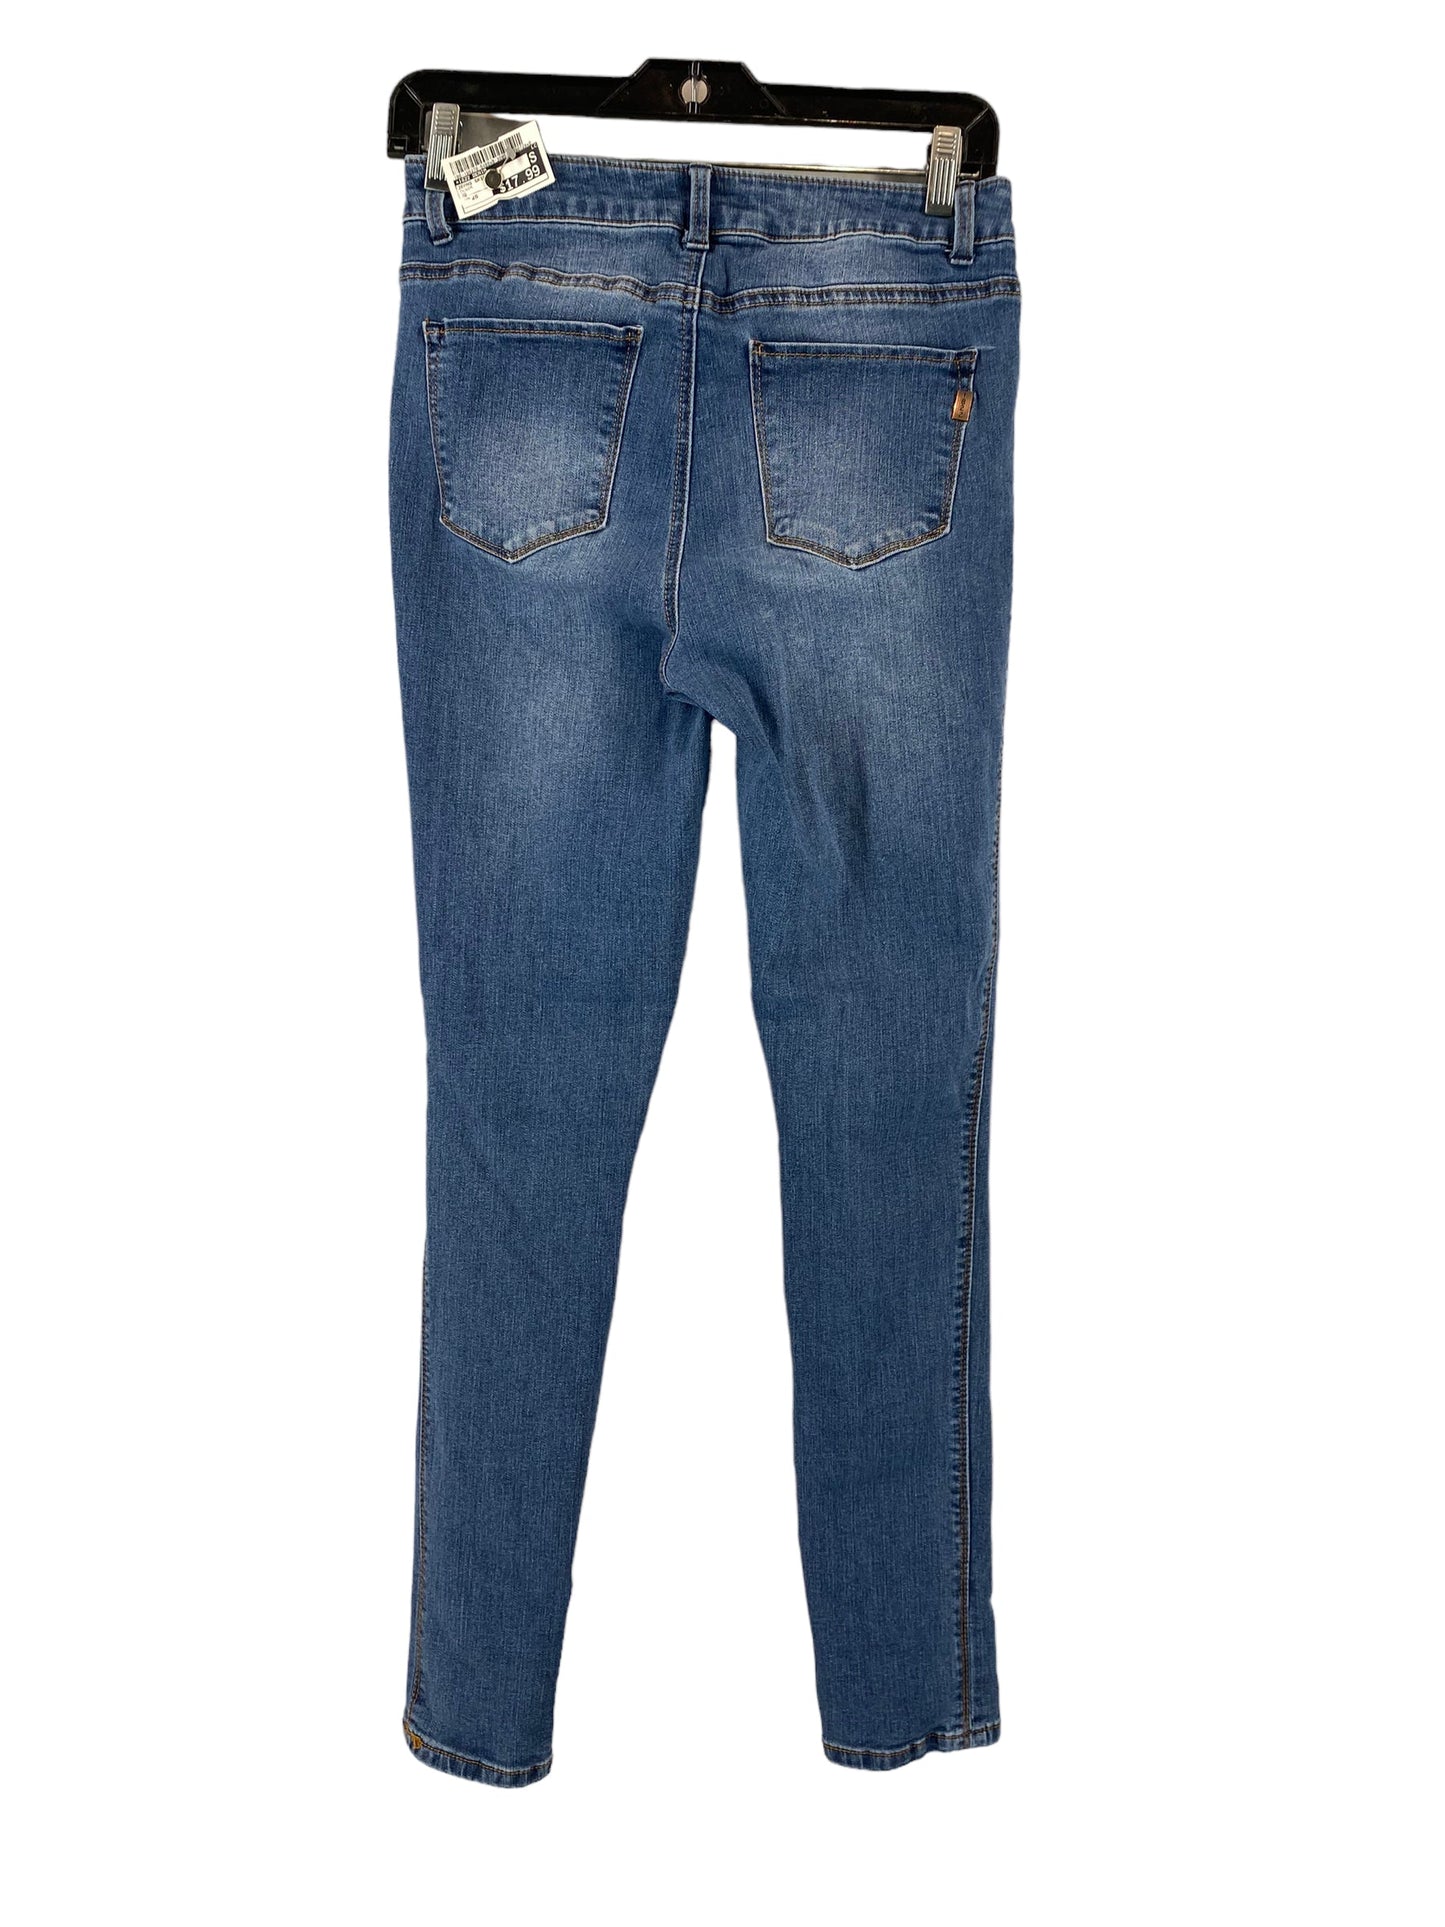 Jeans Skinny By 1822 Denim  Size: 28